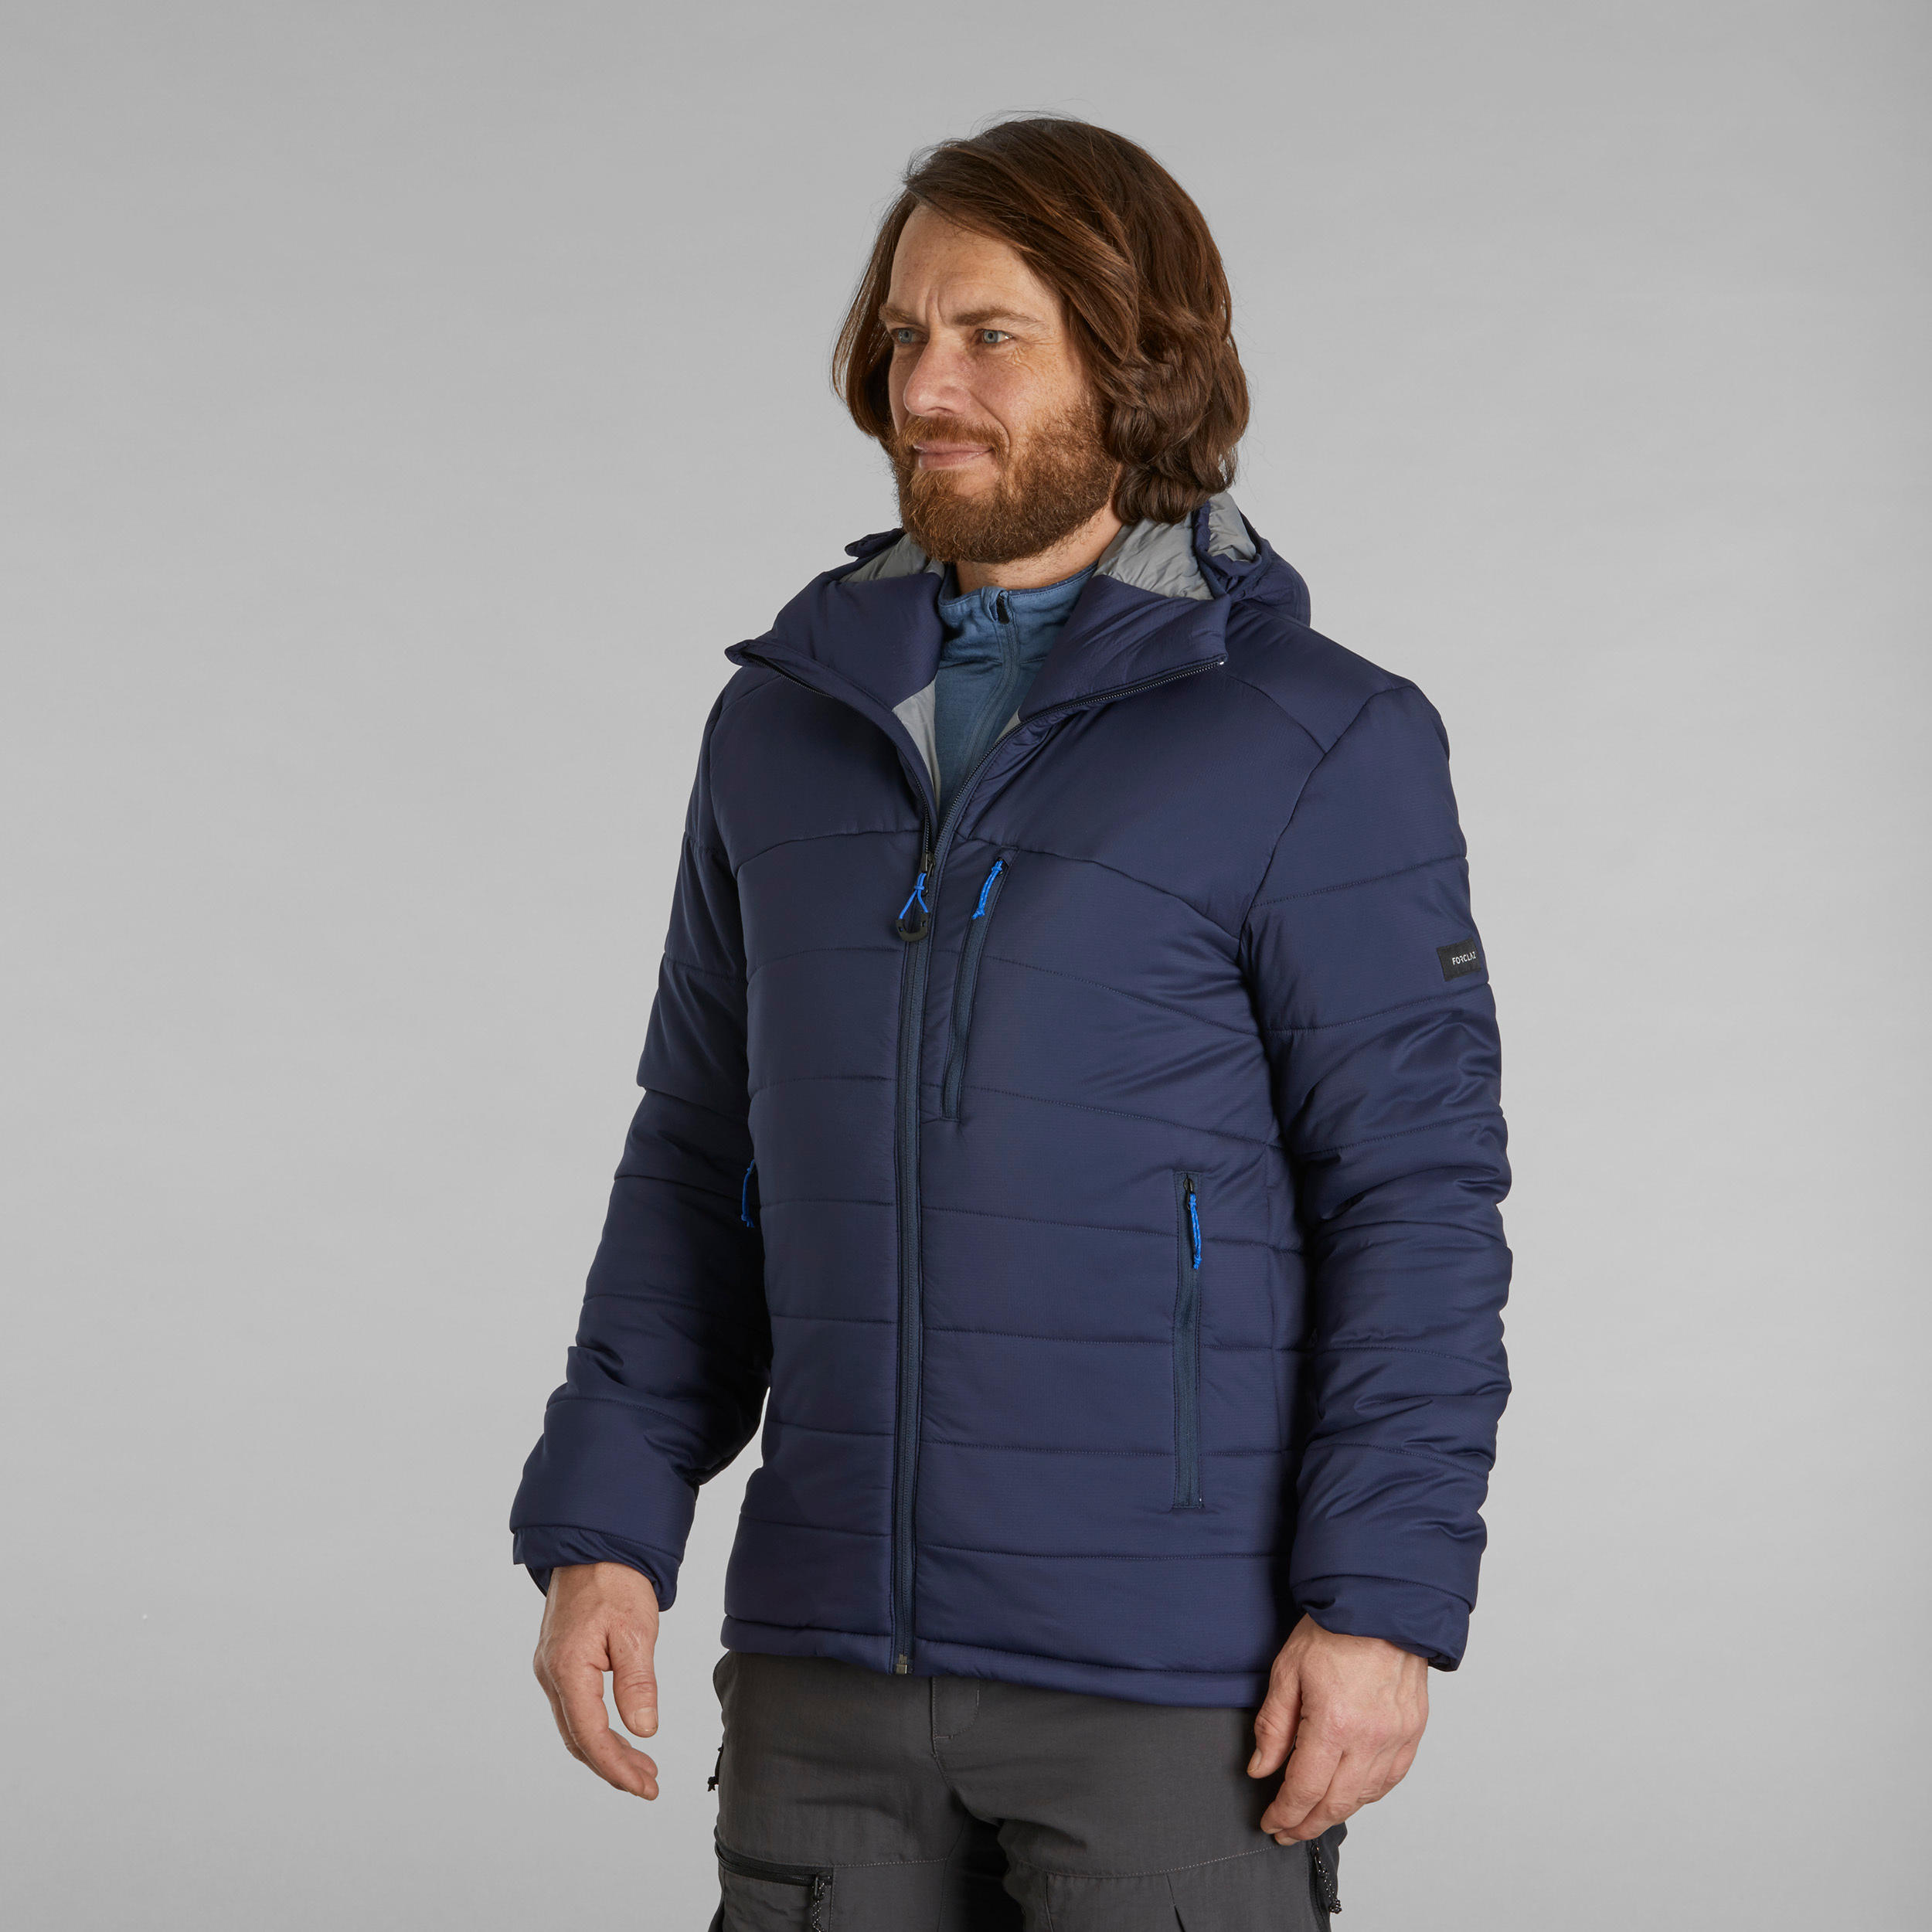 Buy Men's Trekking Padded Jacket With Hood 10°C Navy Online | Decathlon